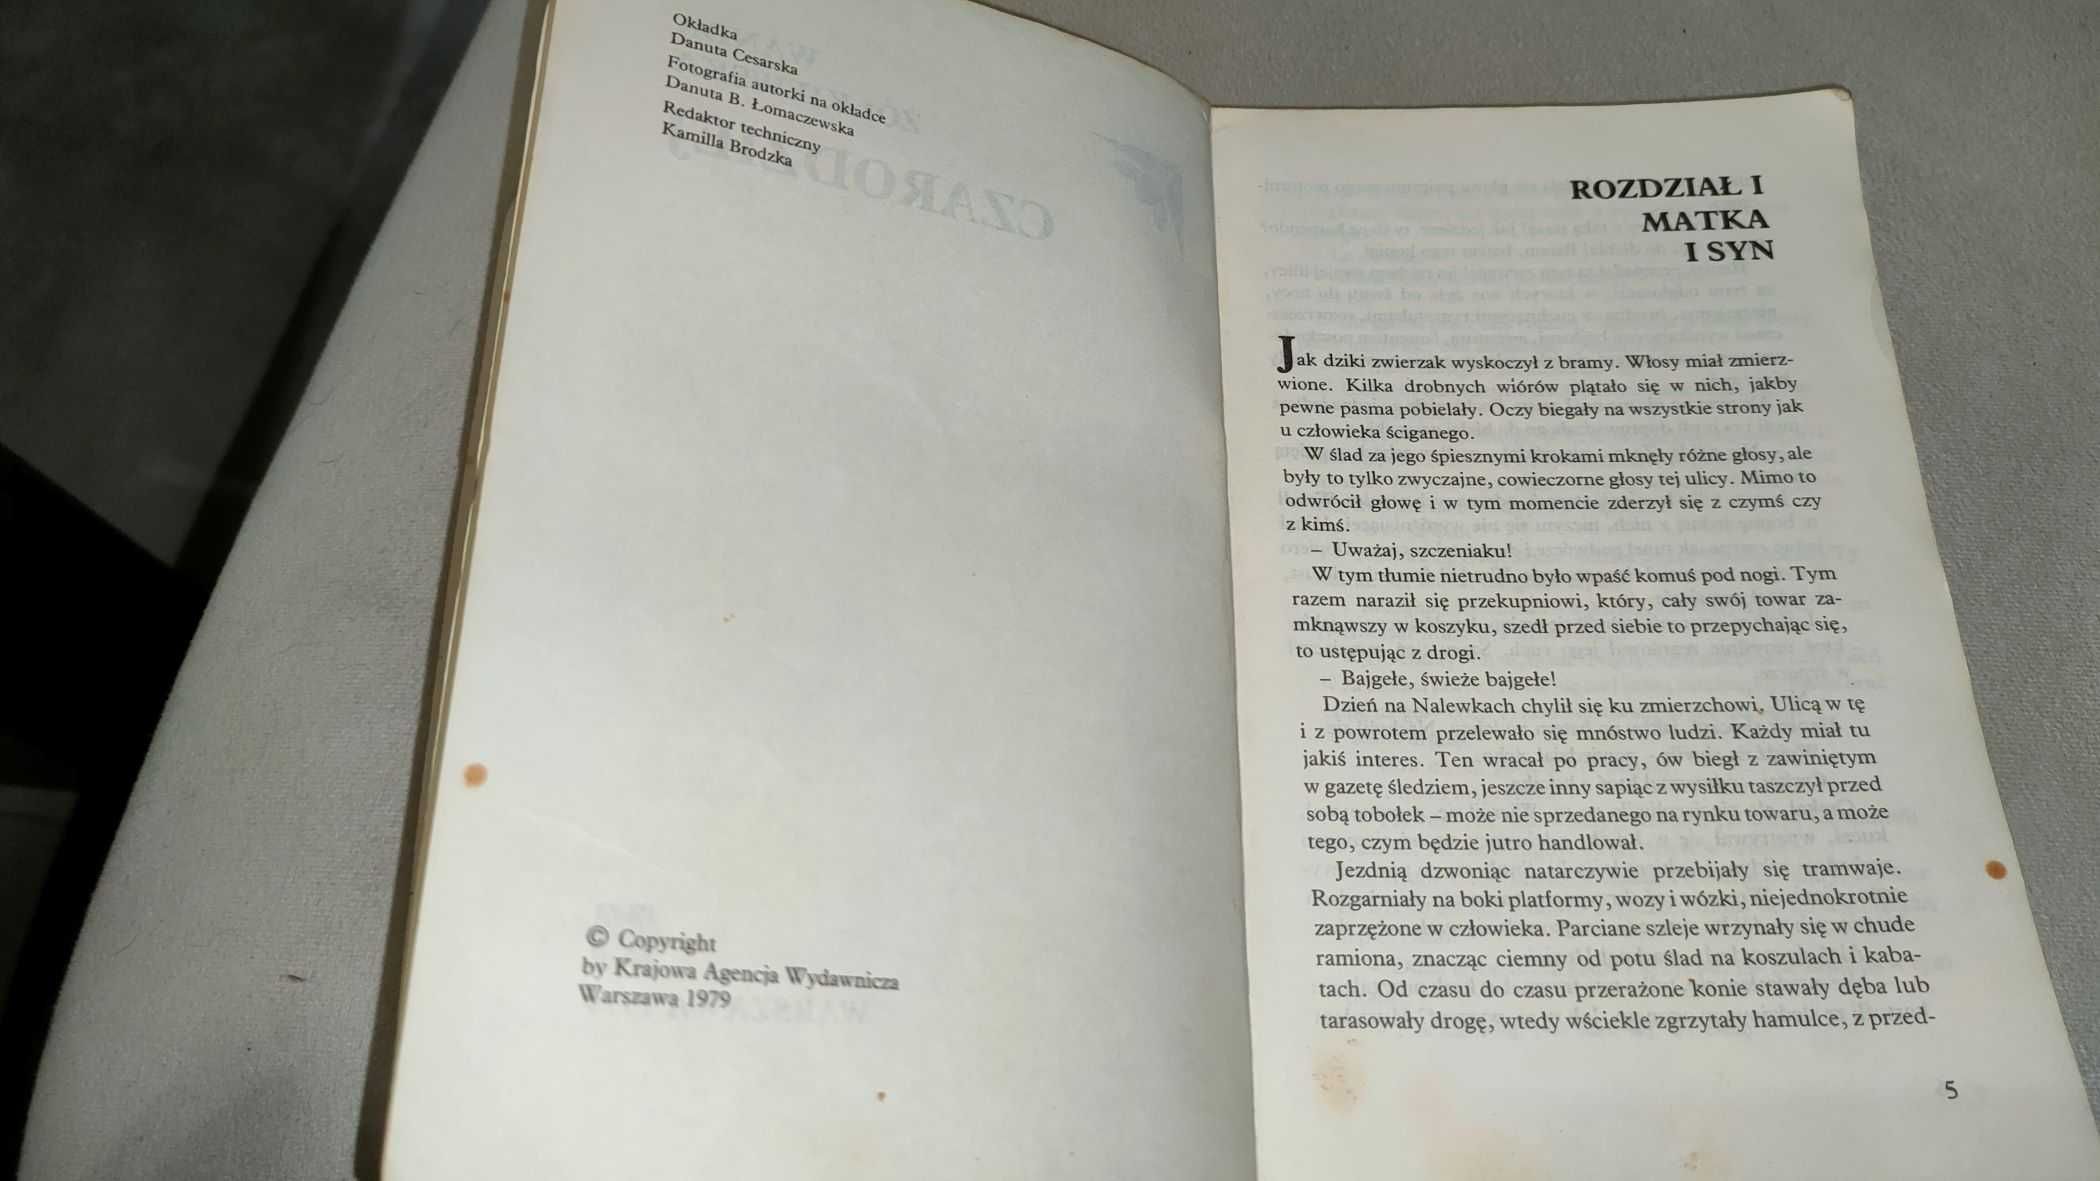 „Czarodziej” Wanda Żółkiewska + GRATIS książka